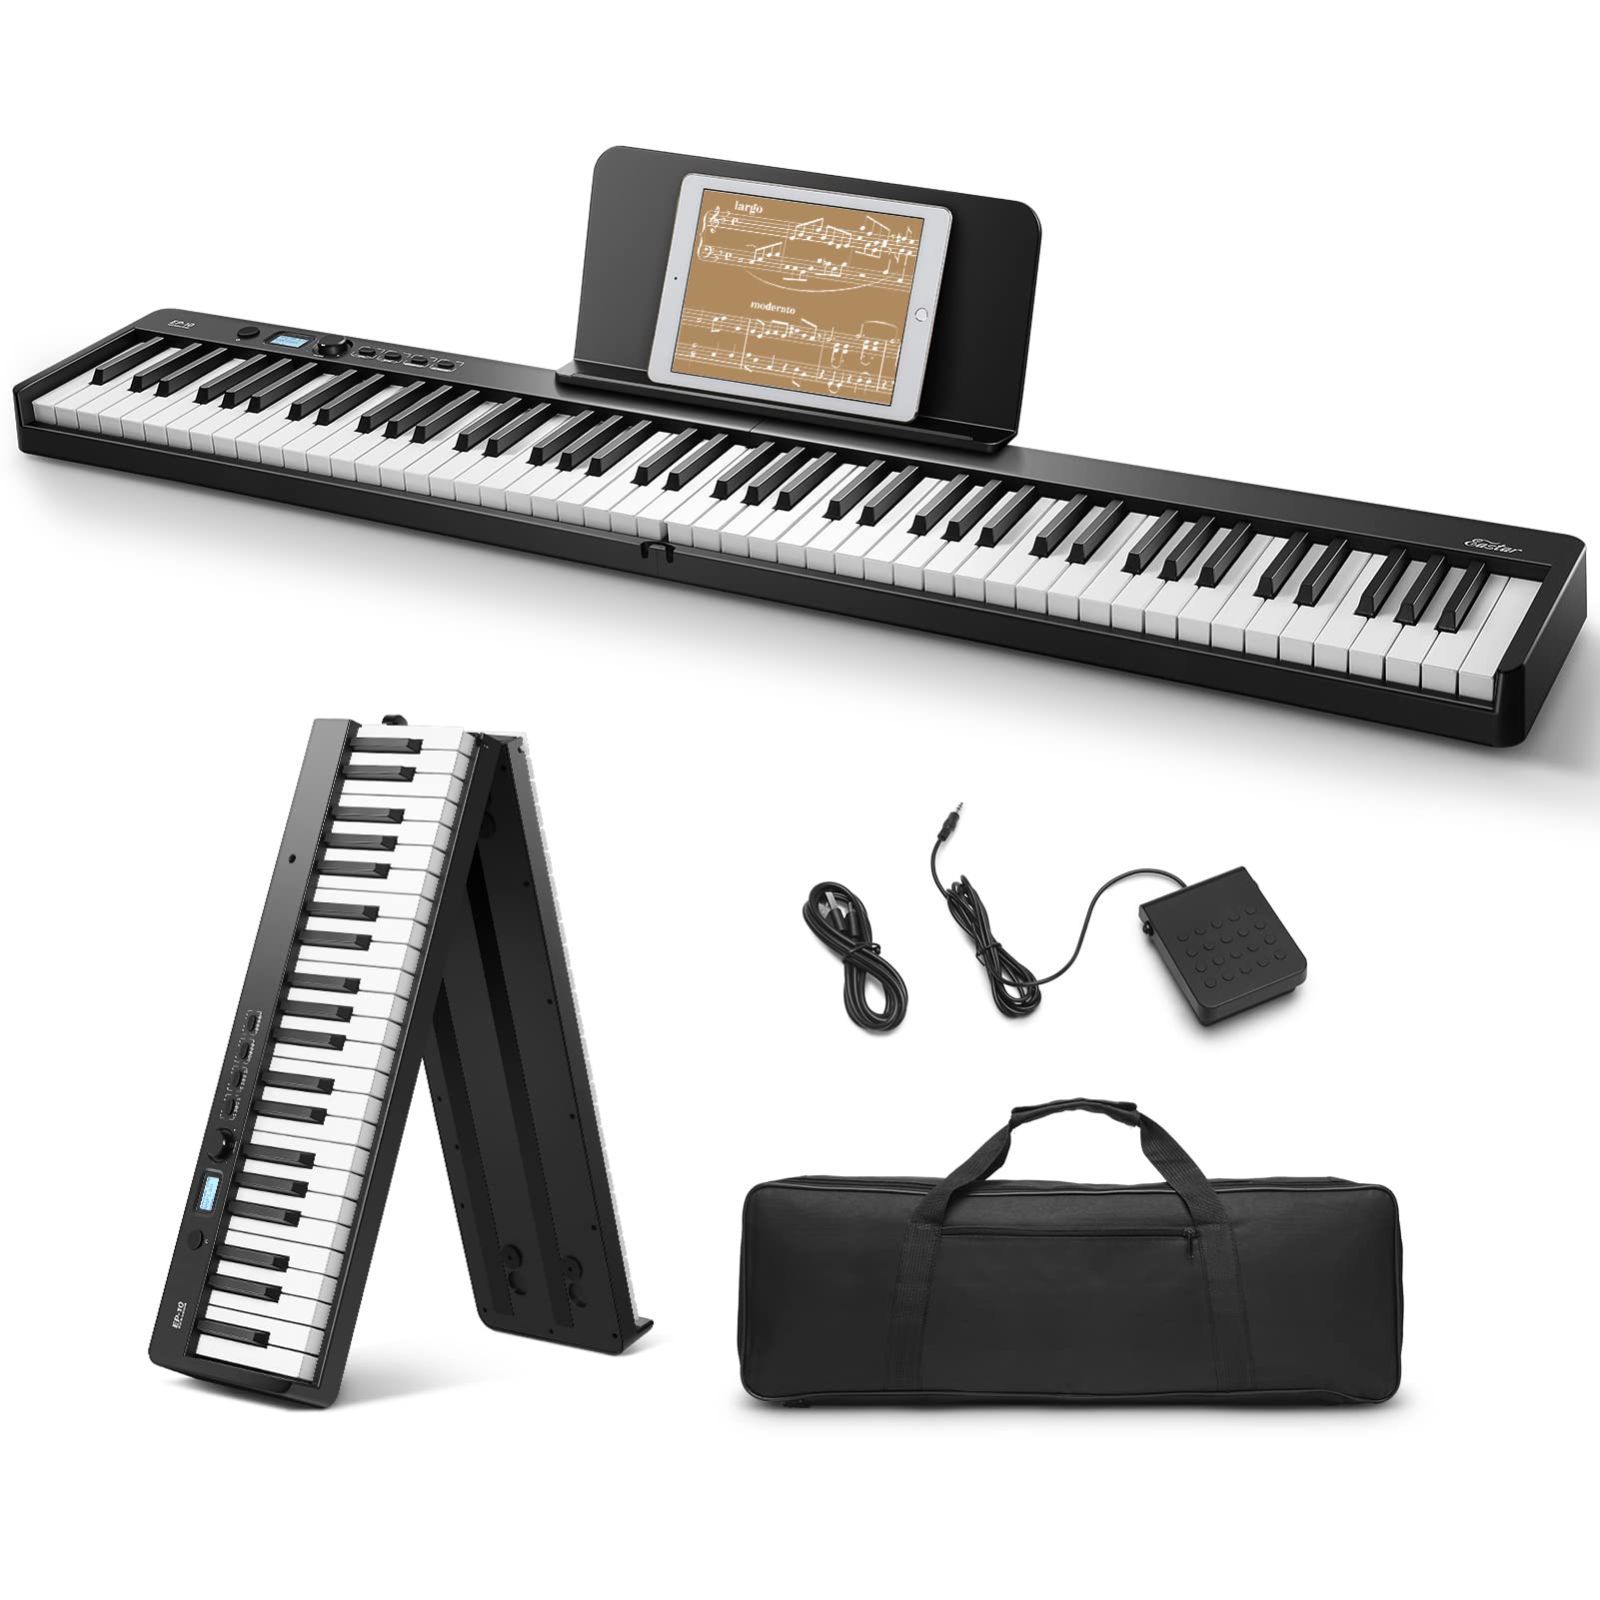 TAHORNG OP88 折りたたみ式電子ピアノ MIDIキーボード 88鍵盤 - MIDI